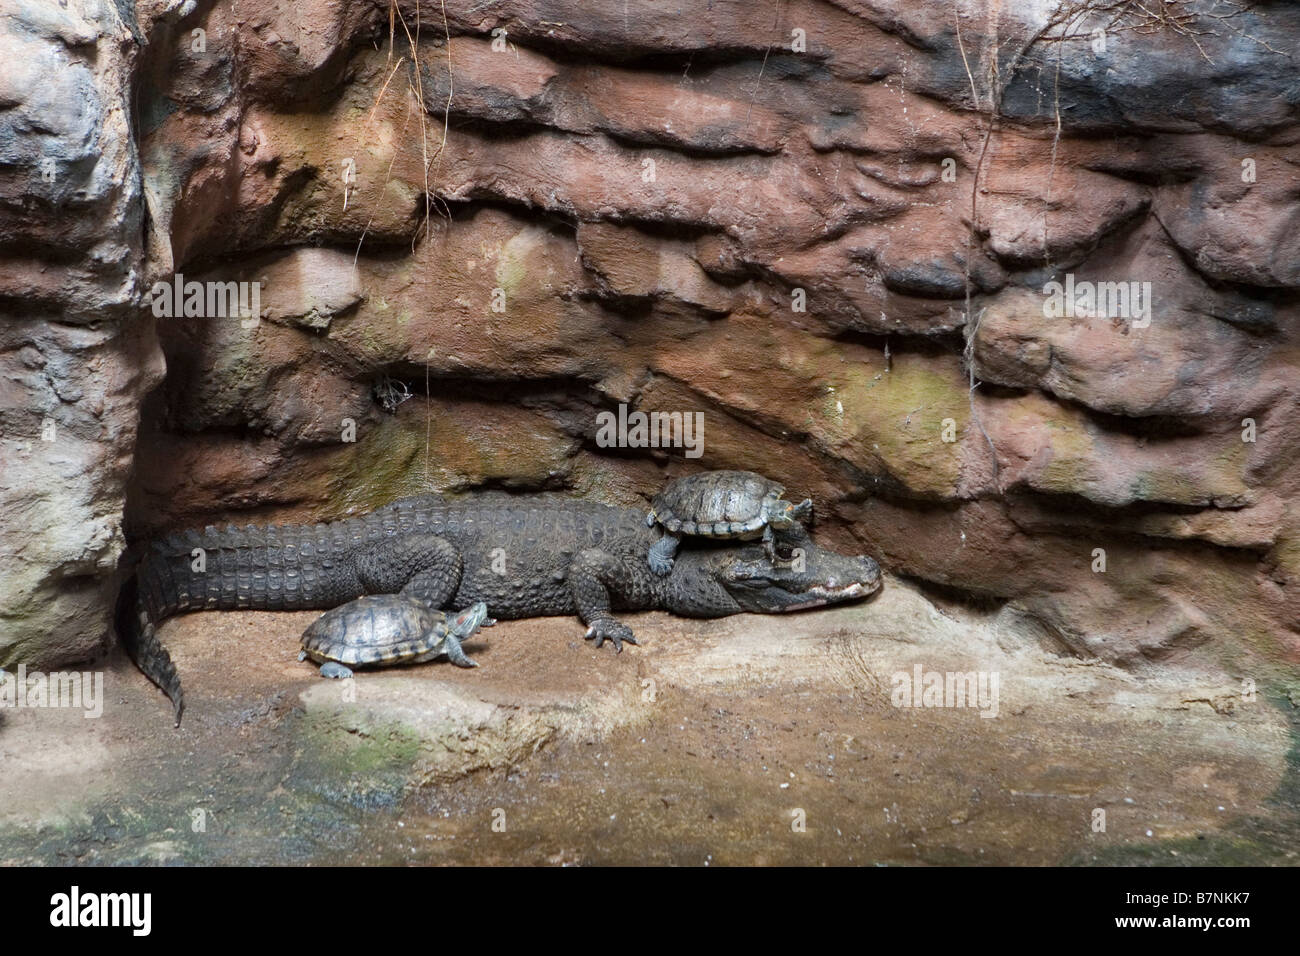 Un hibou rouge douce sur la tête d'un crocodile Banque D'Images